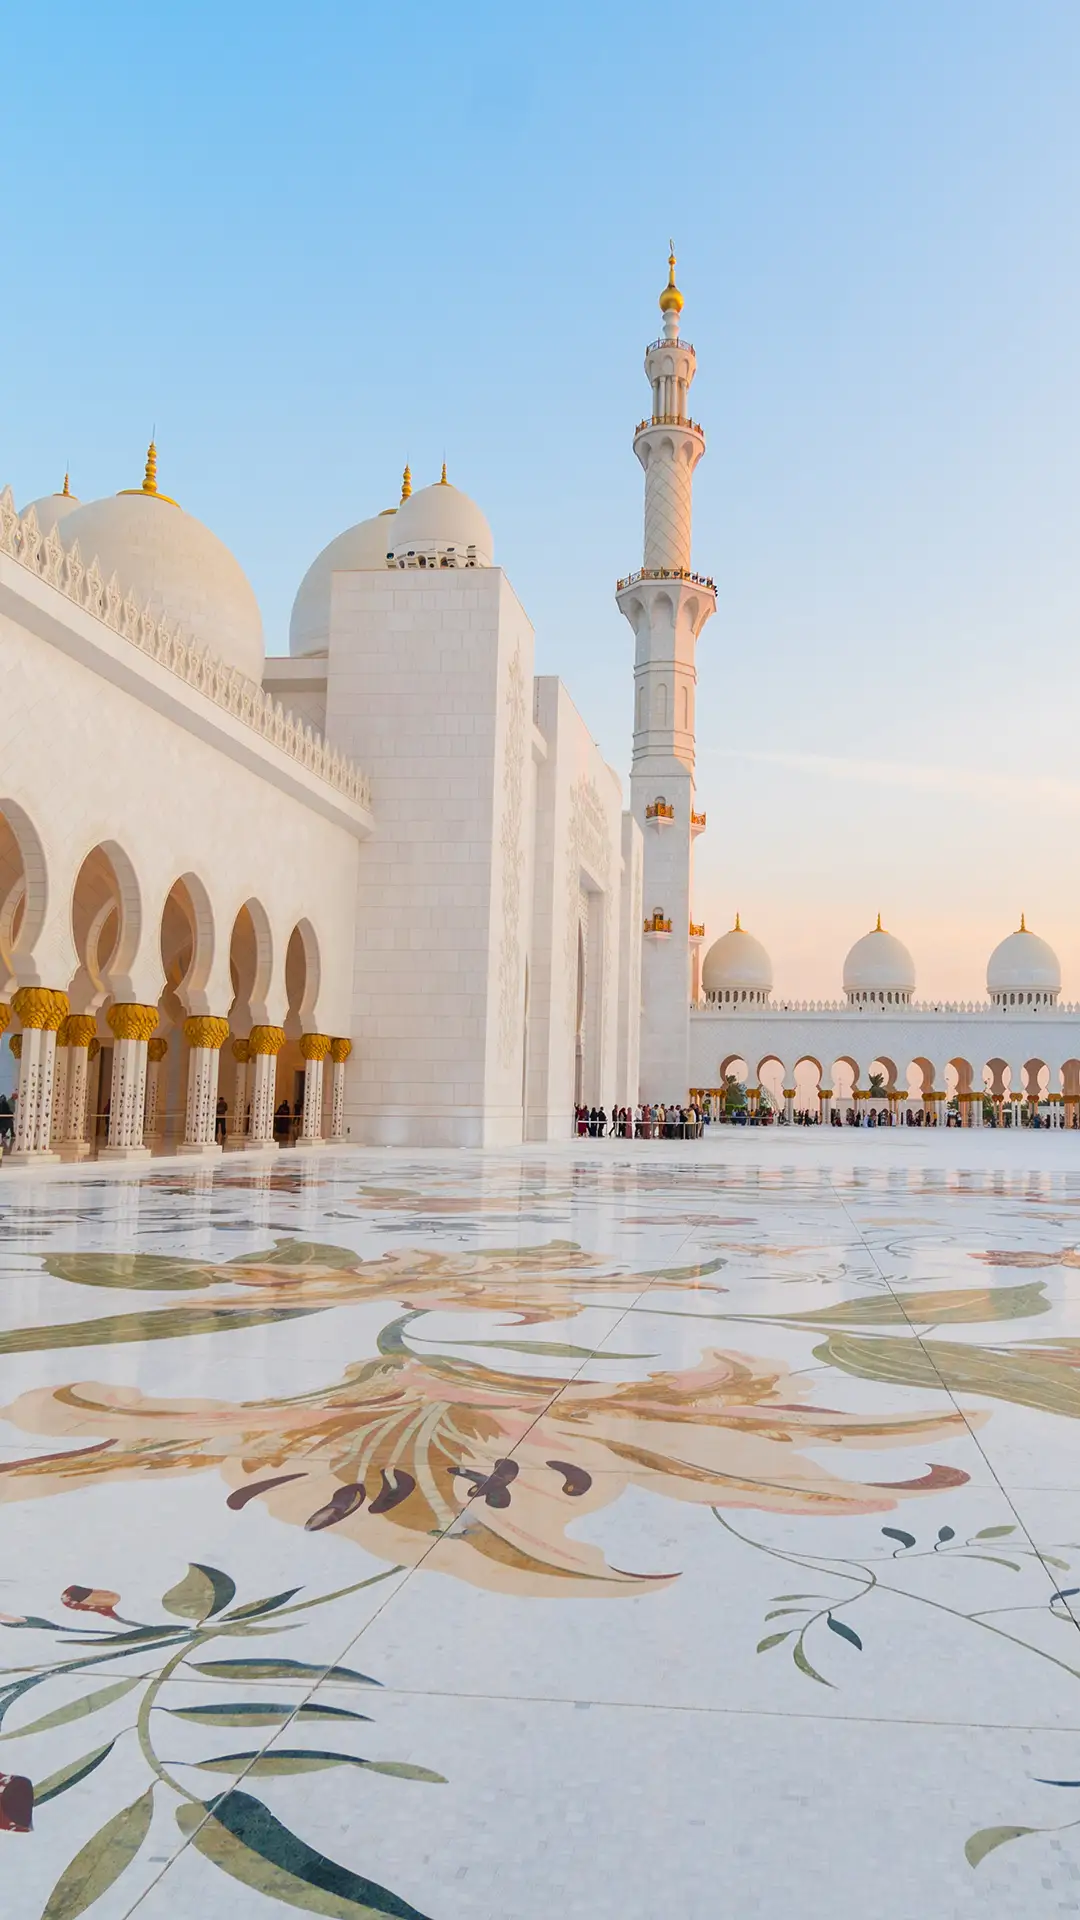 Panoramic view of Sheikh Zayed Grand Mosque, Abu Dhabi, United Arab Emirates.